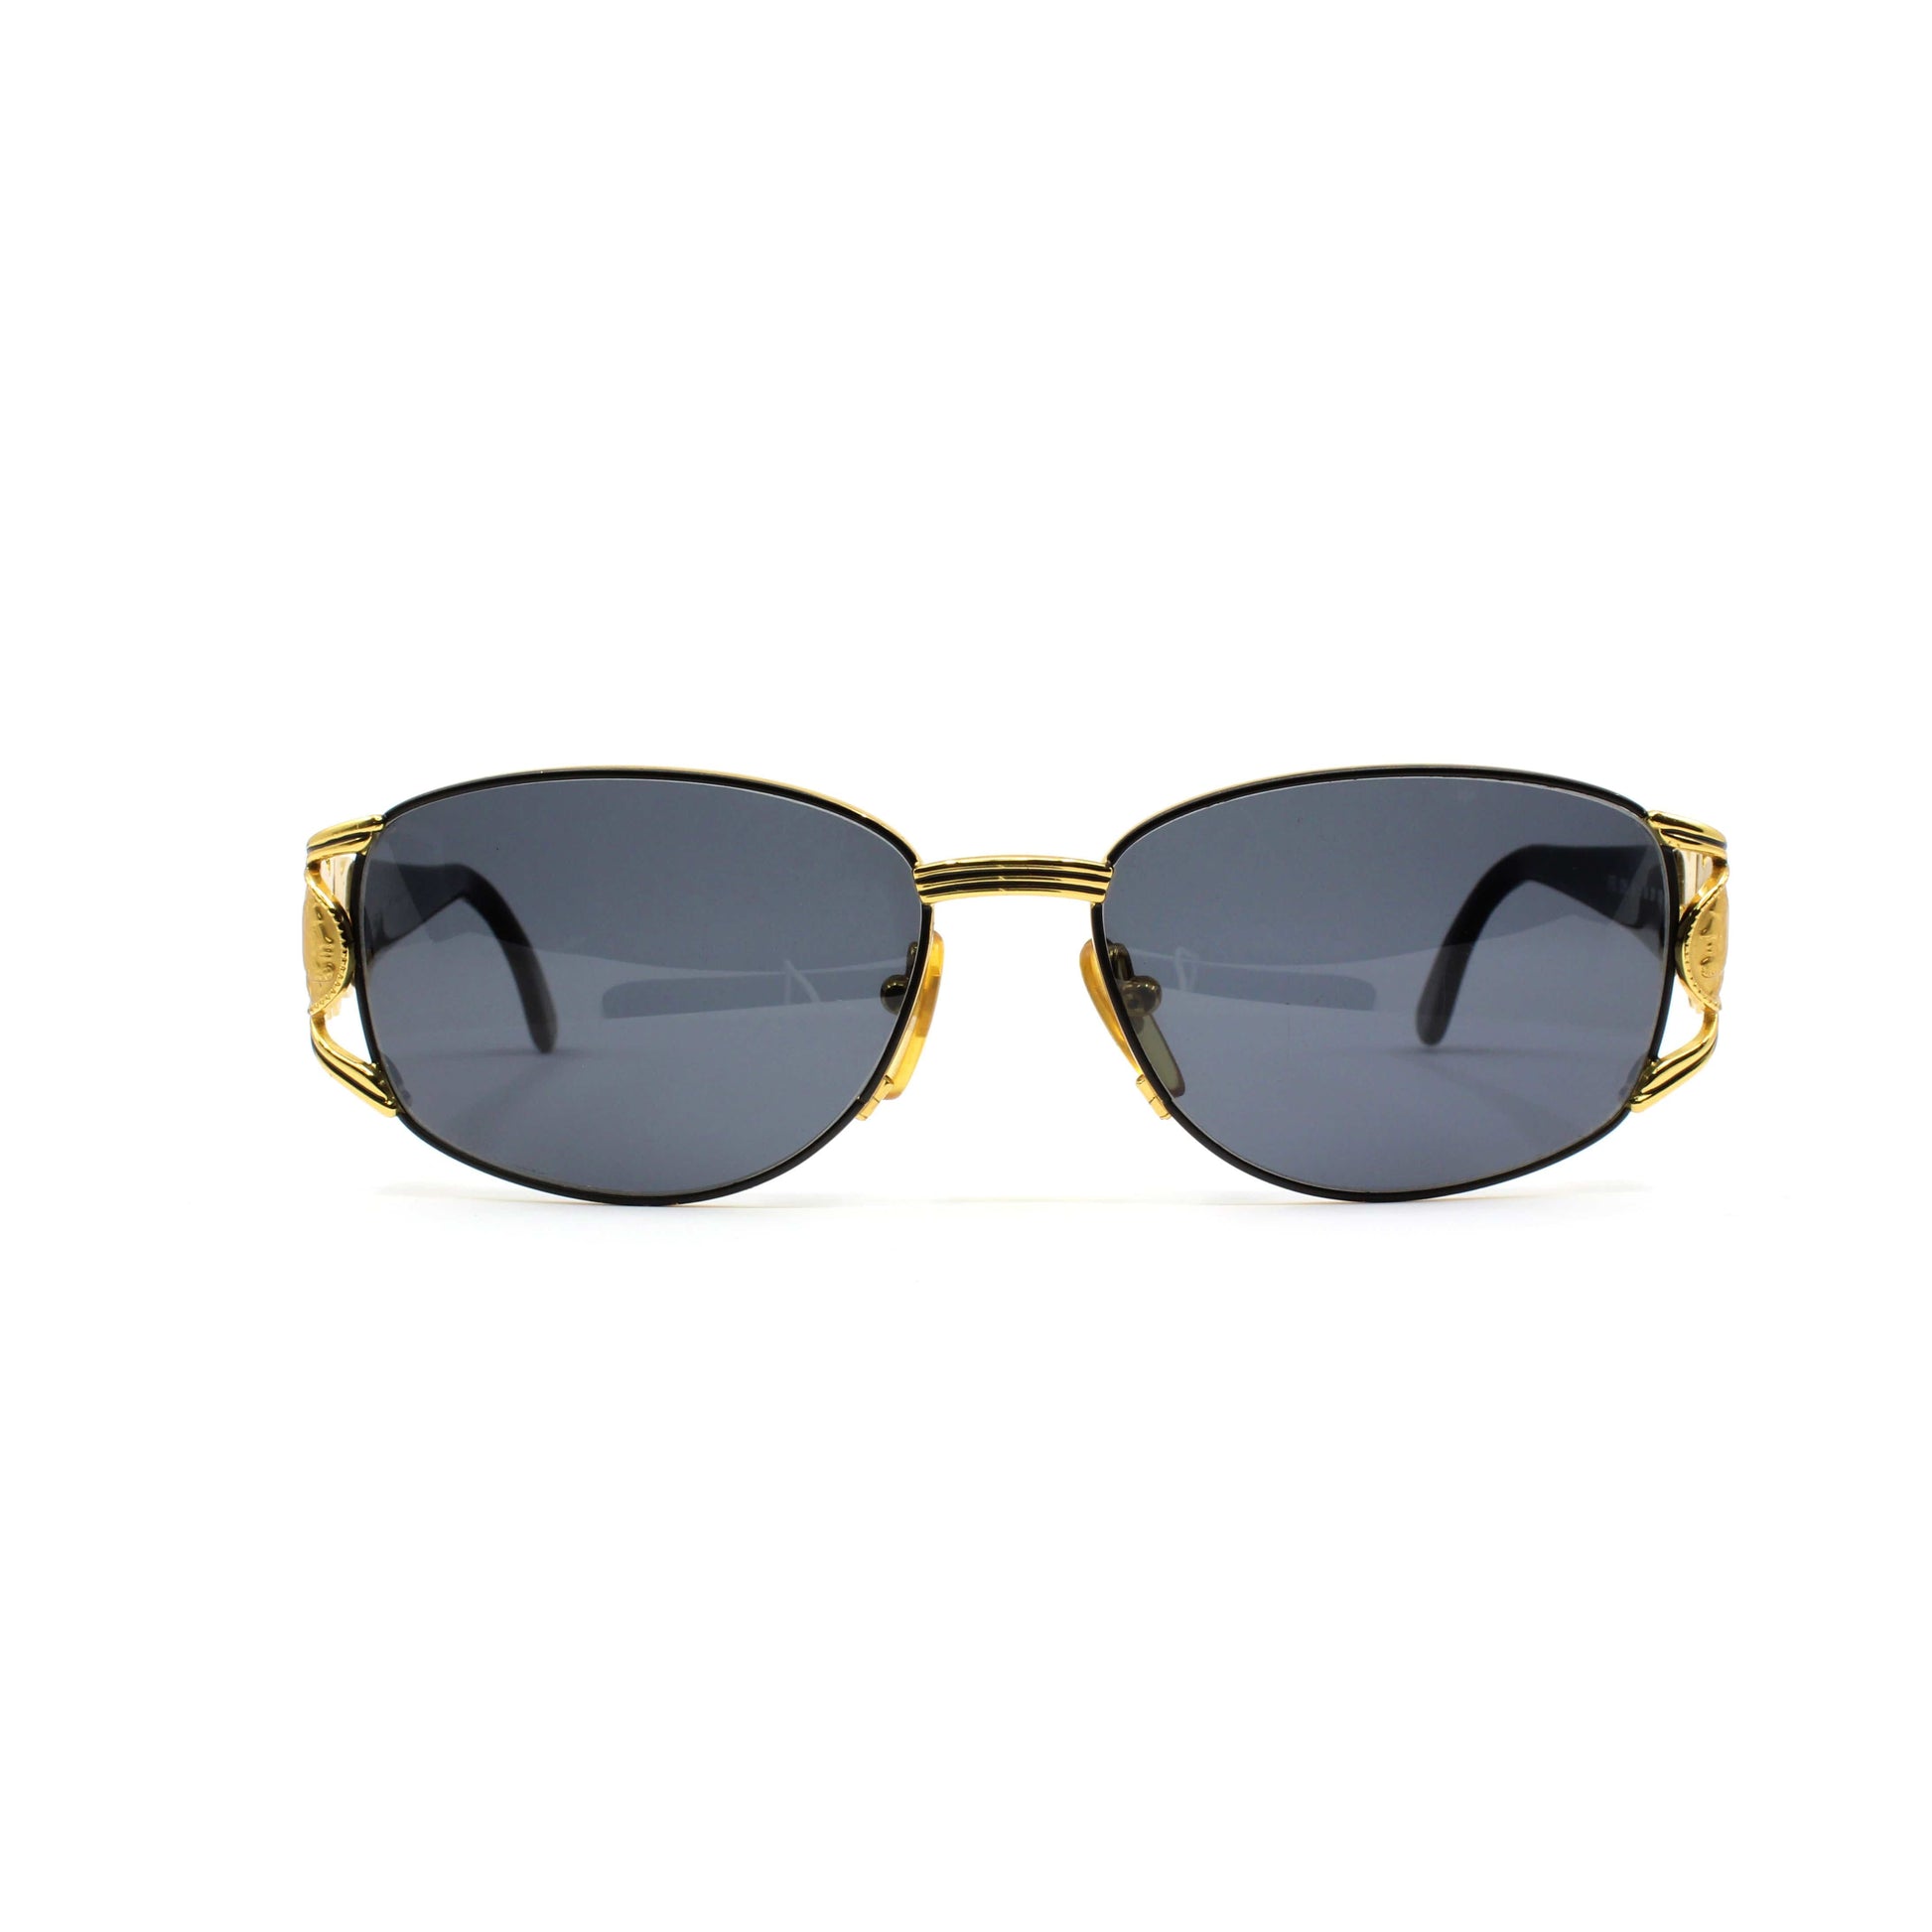 Vintage Fendi FS 295 201 Sunglasses RSTKD Vintage